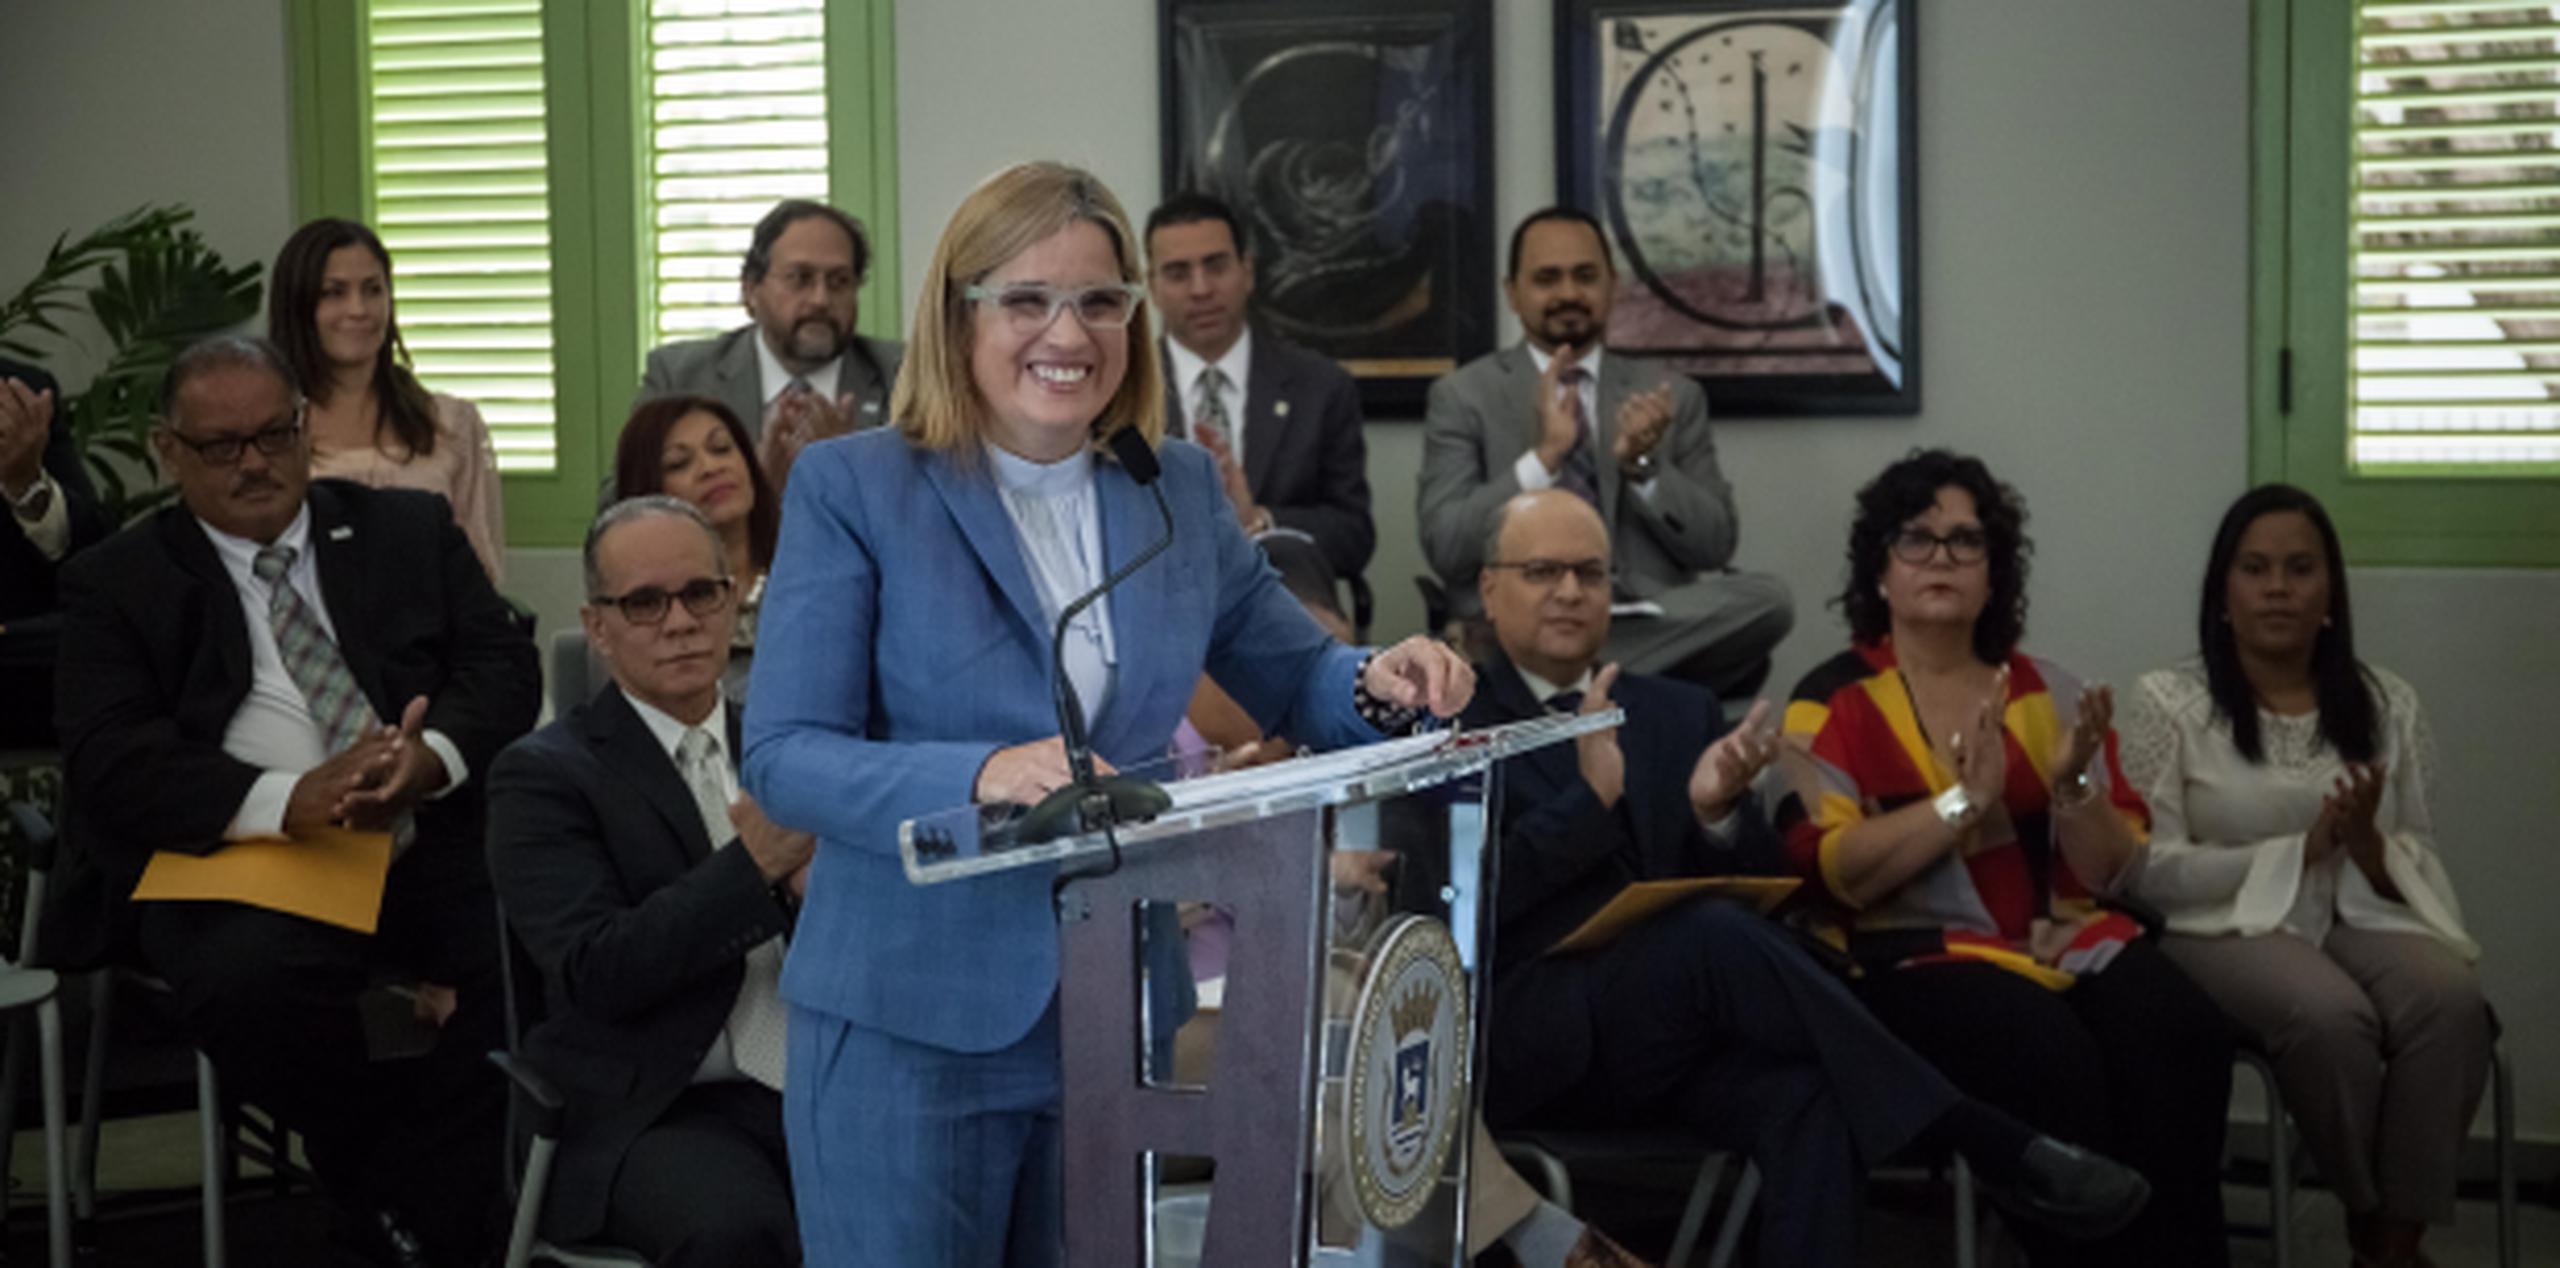 La alcaldesa de San Juan también anunció durante su Mensaje de Presupuesto que los comercios de San Juan pagarán por el recogido y disposición de la basura, según su volumen de negocio. (Suministrada)